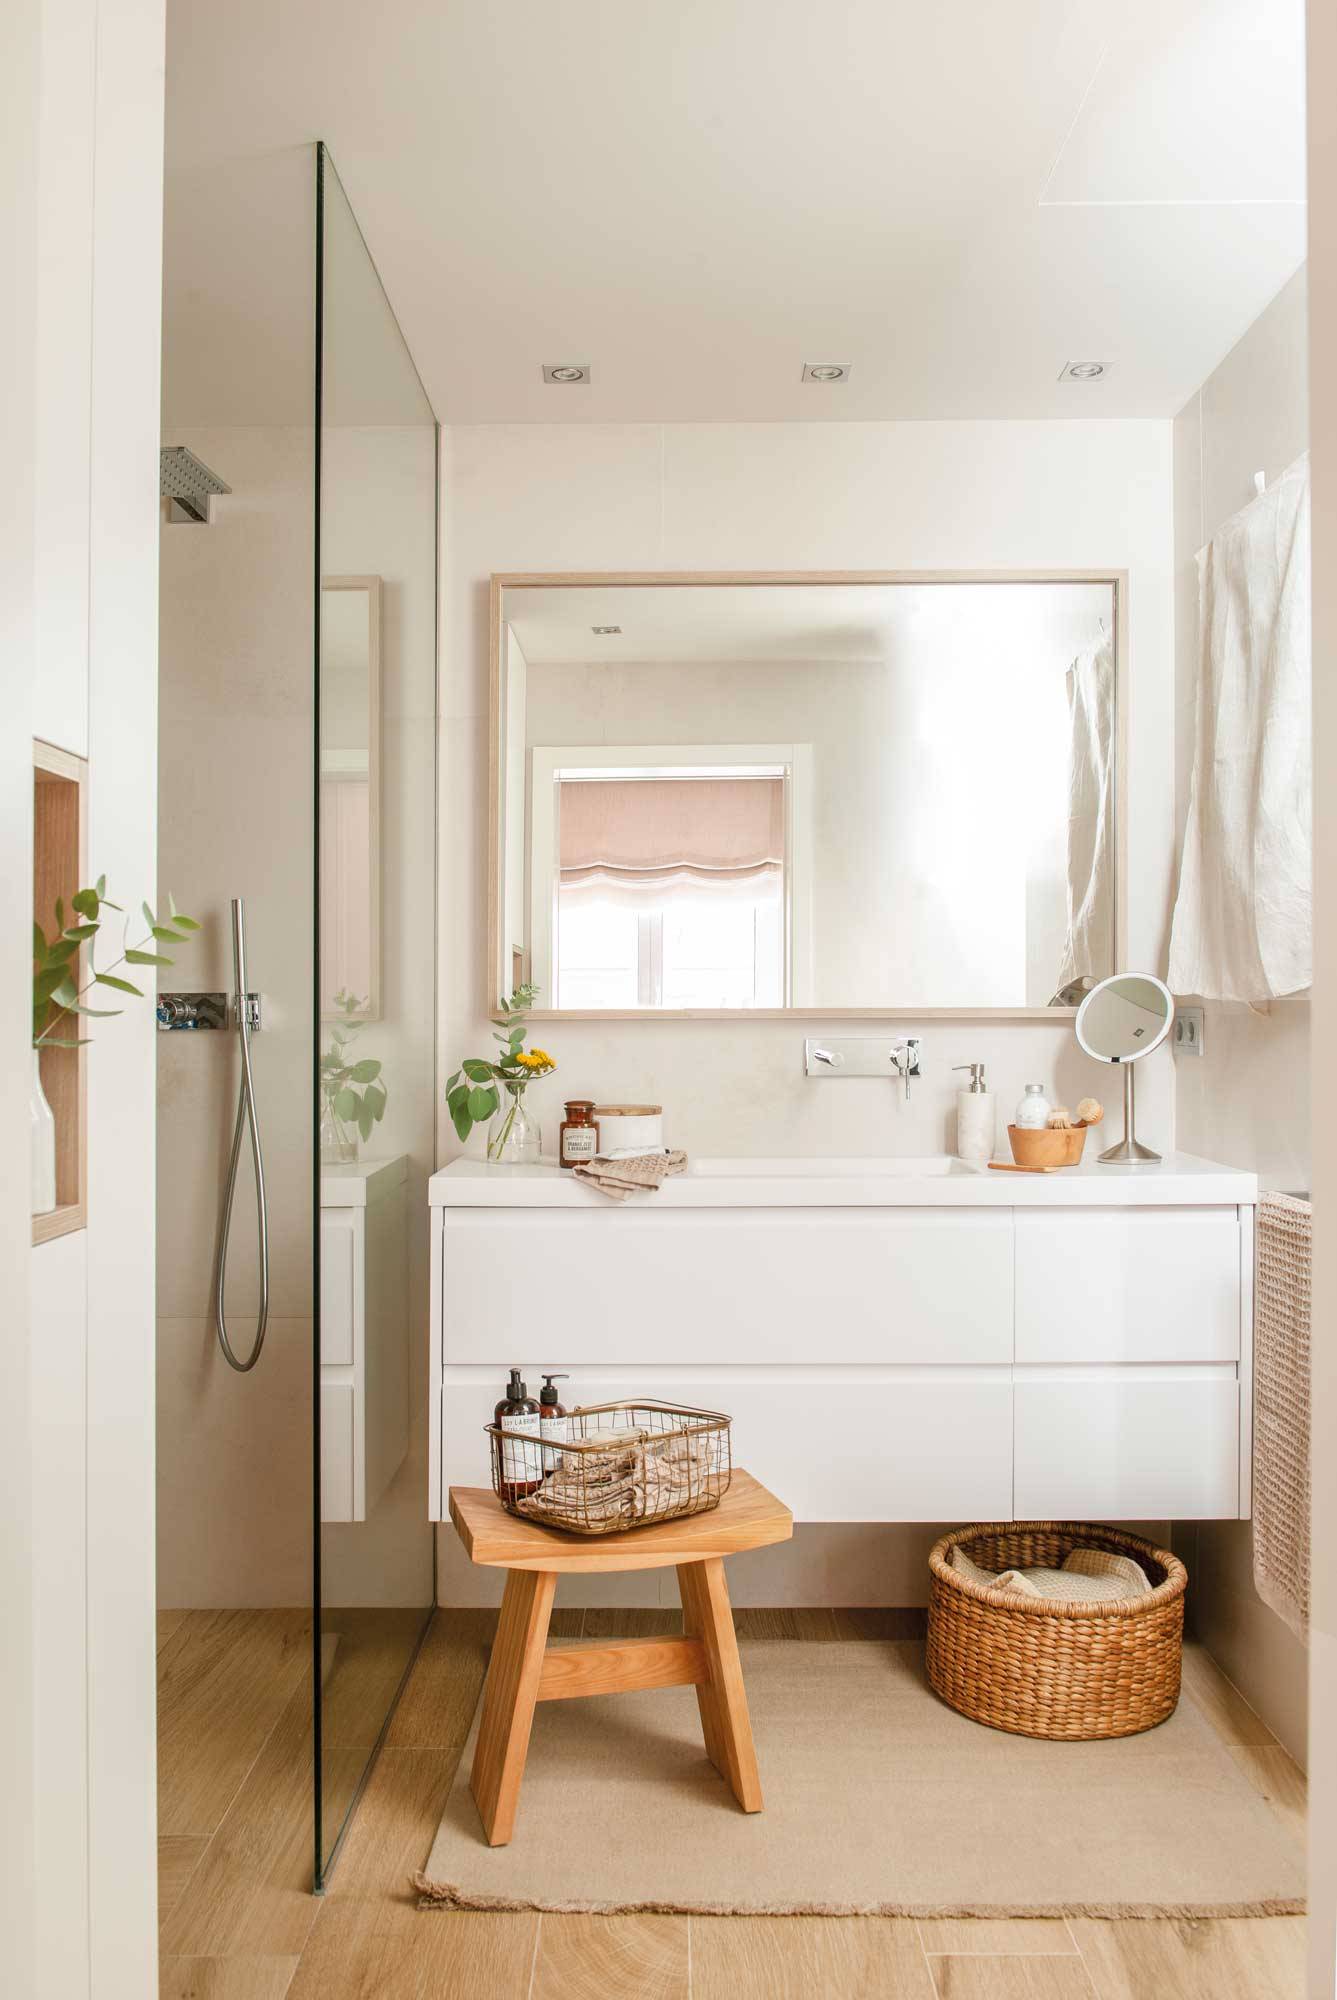 Baño reformado con suelo de madera, ducha con mampara, alfombra y mueble bajolavabo blanco.